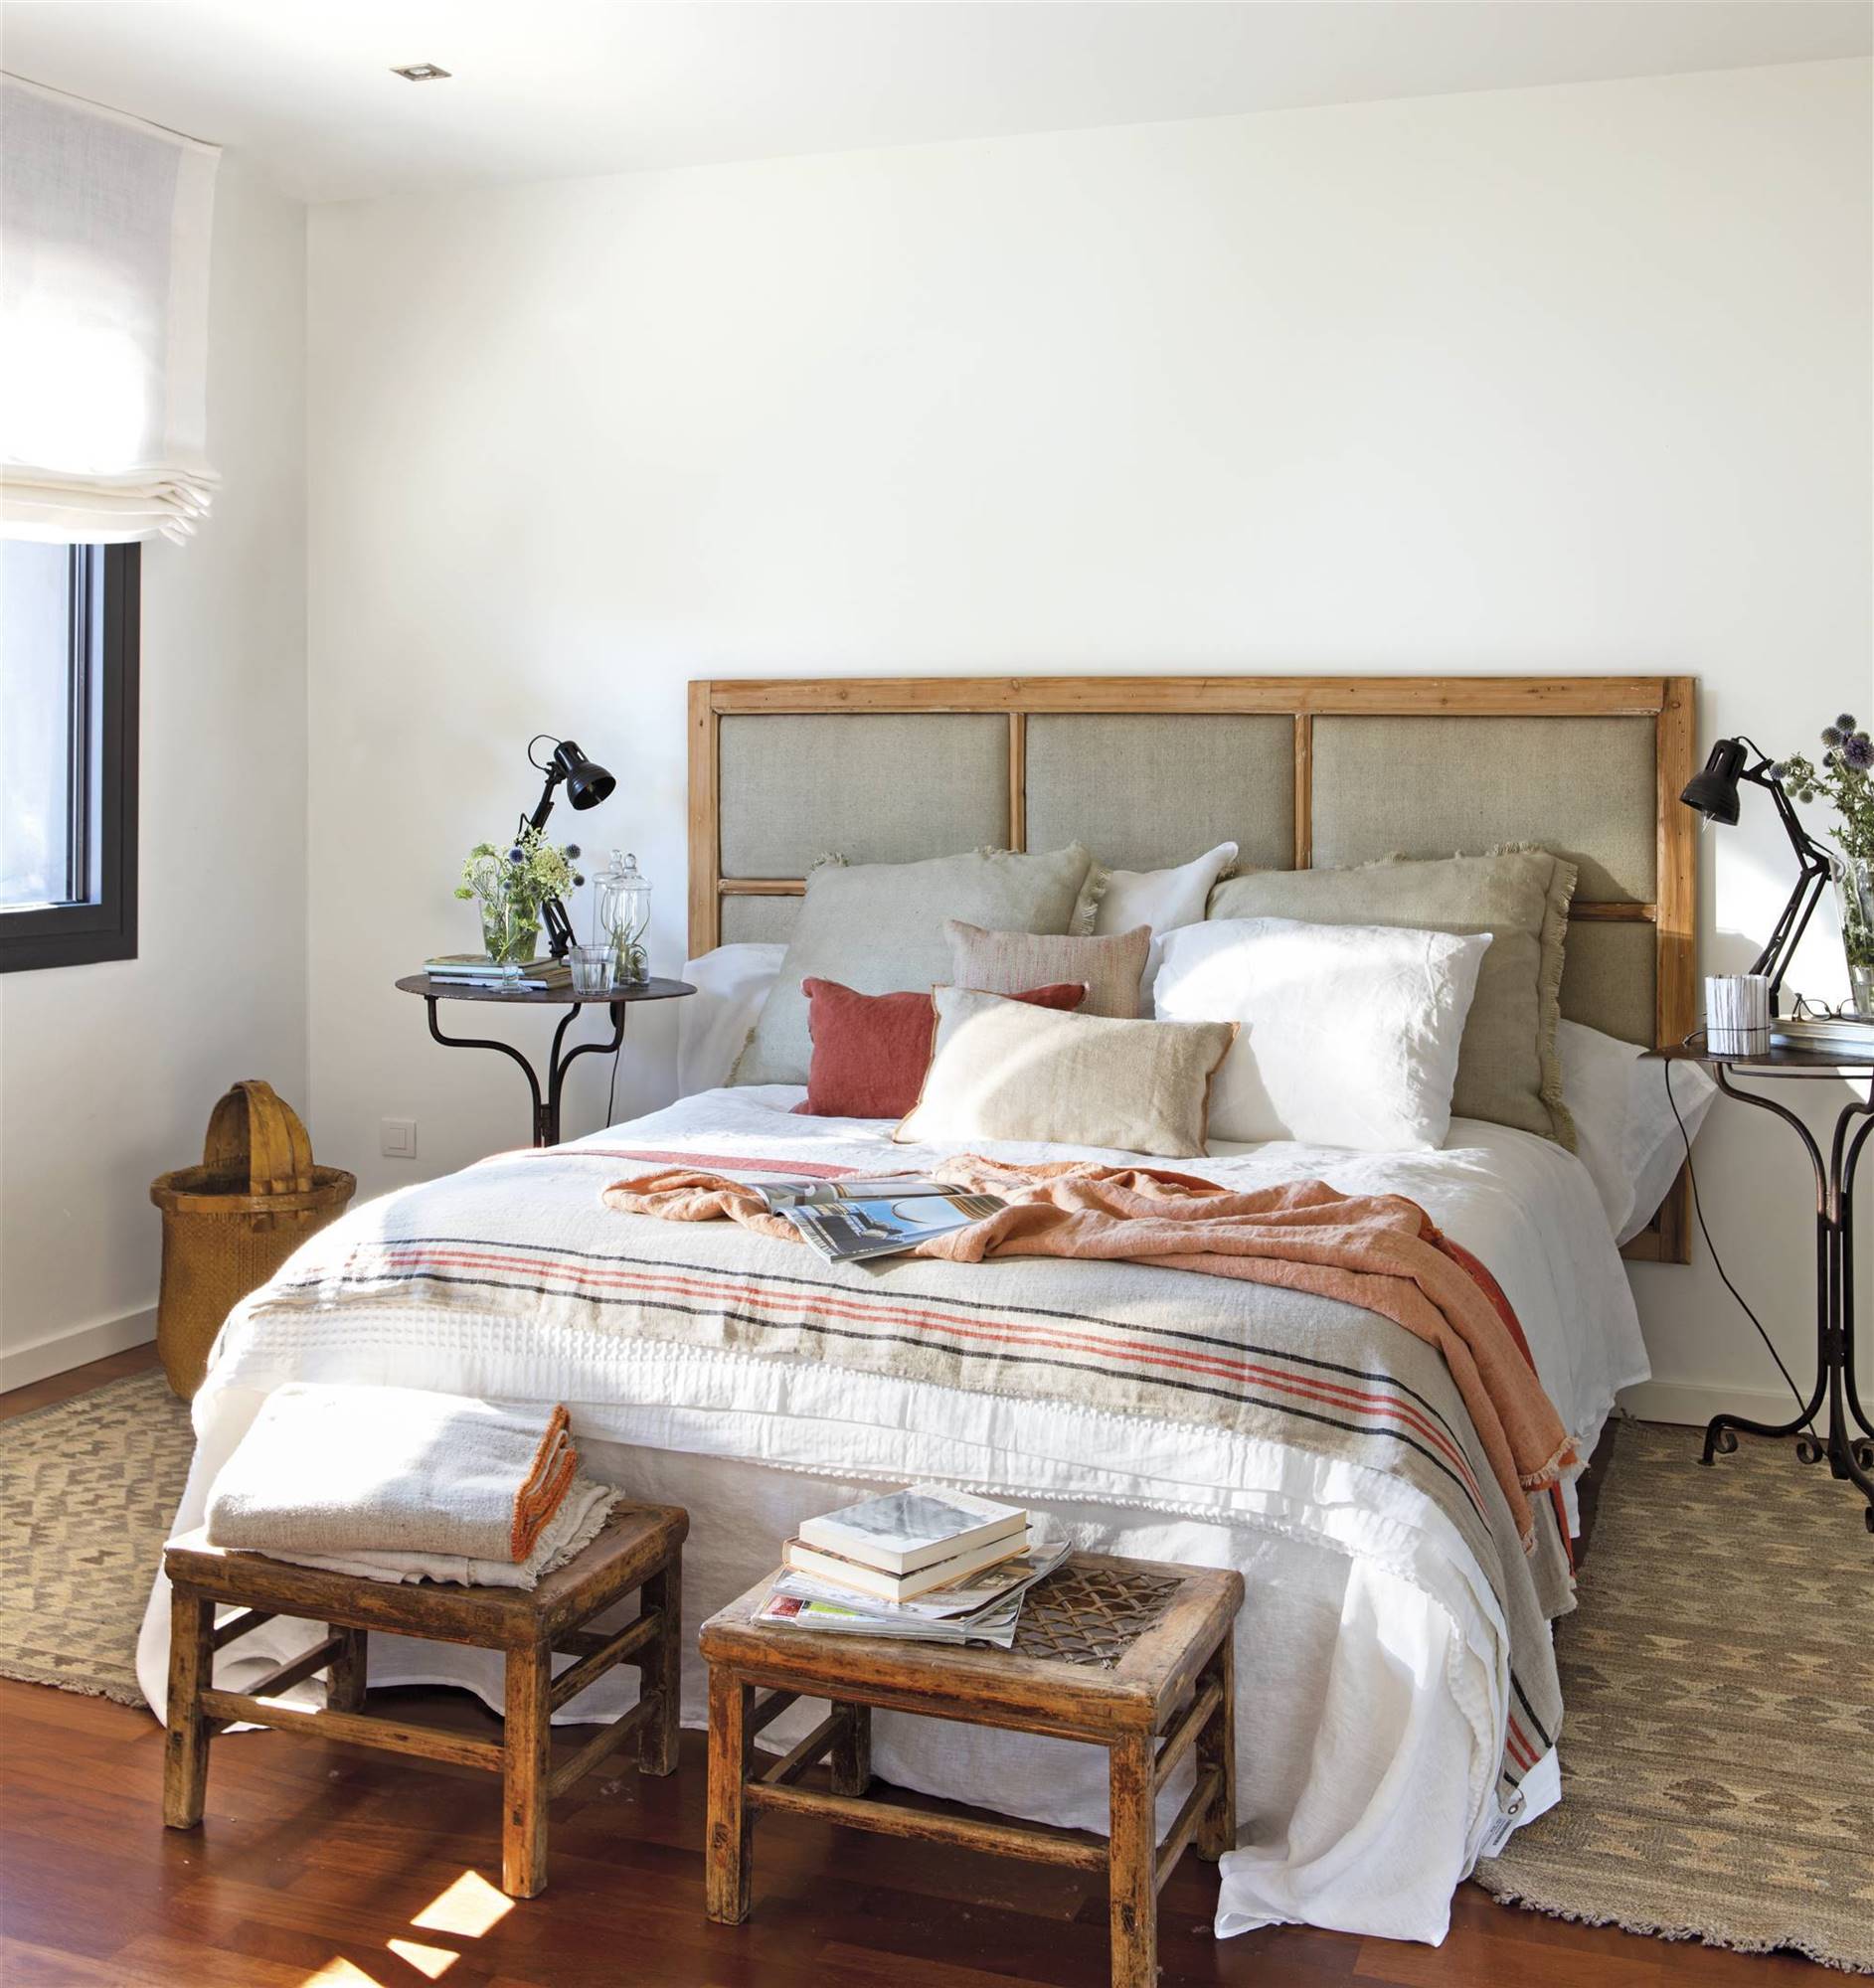 Dormitorio con cabezal tapizado con cuarterones en color lino y toques caldera y dos taburetes antiguos a los pies de la cama 00466510